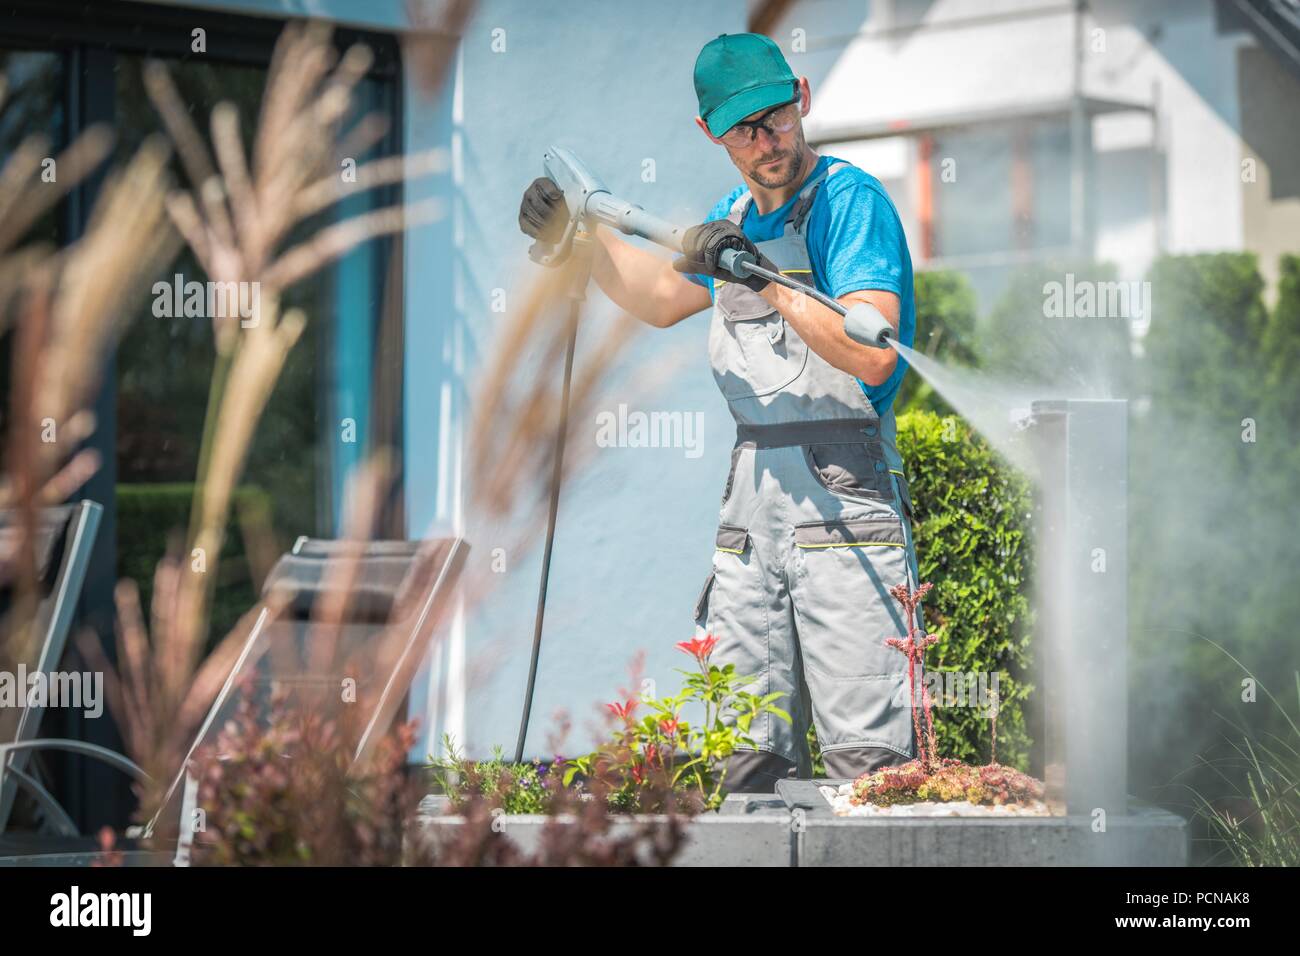 Lavaggio a pressione nel giardino. Uomini caucasici nella sua 30s e la pulizia di primavera. Foto Stock